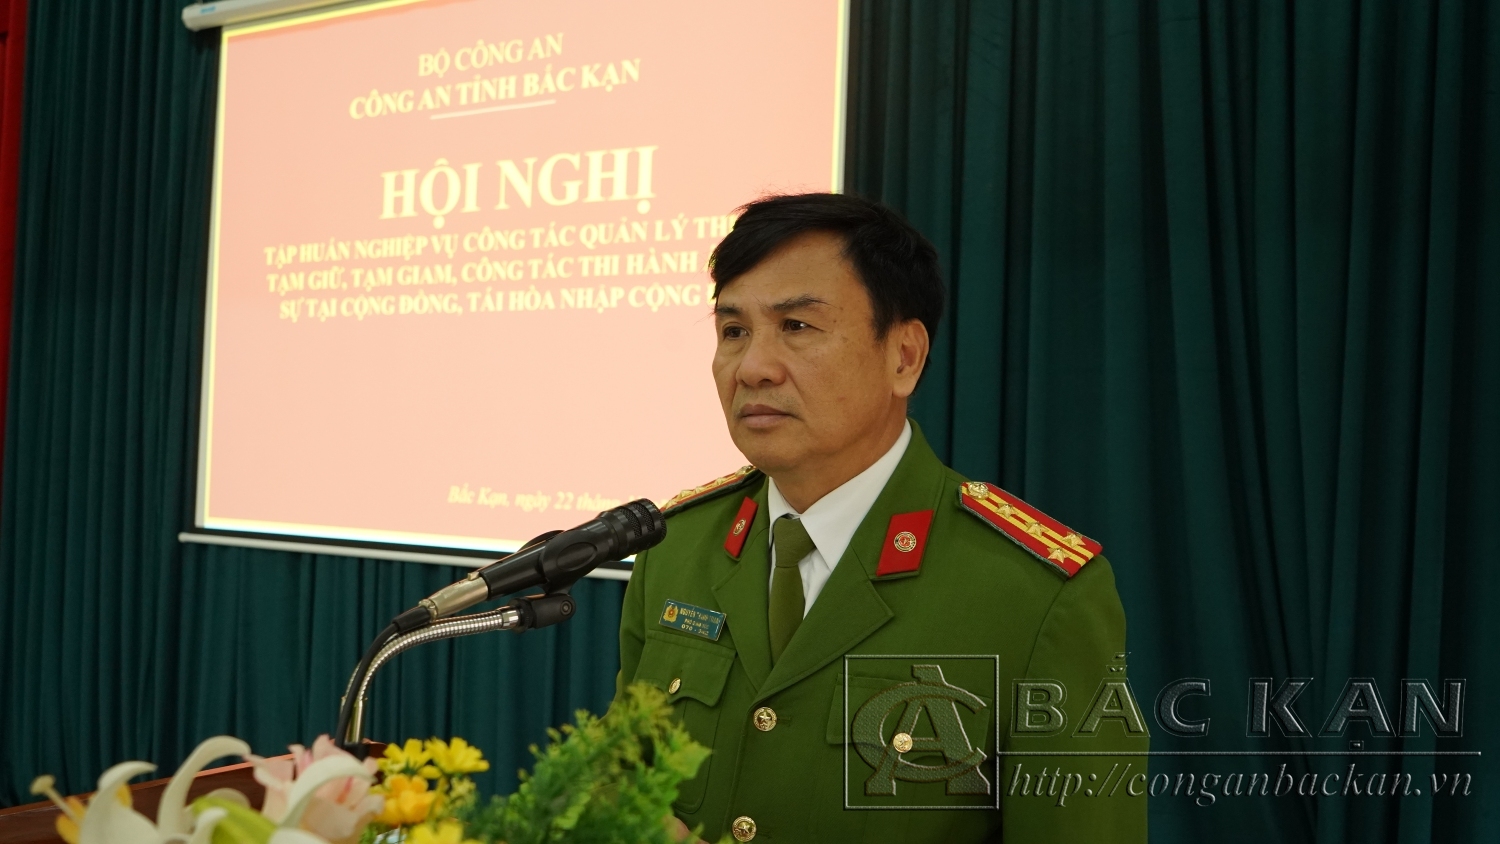 Đại tá. TS Nguyễn Thanh Tuân, Phó Giám đốc Công an tỉnh phát biểu giao nhiệm vụ cho cán bộ tham gia lớp tập huấn